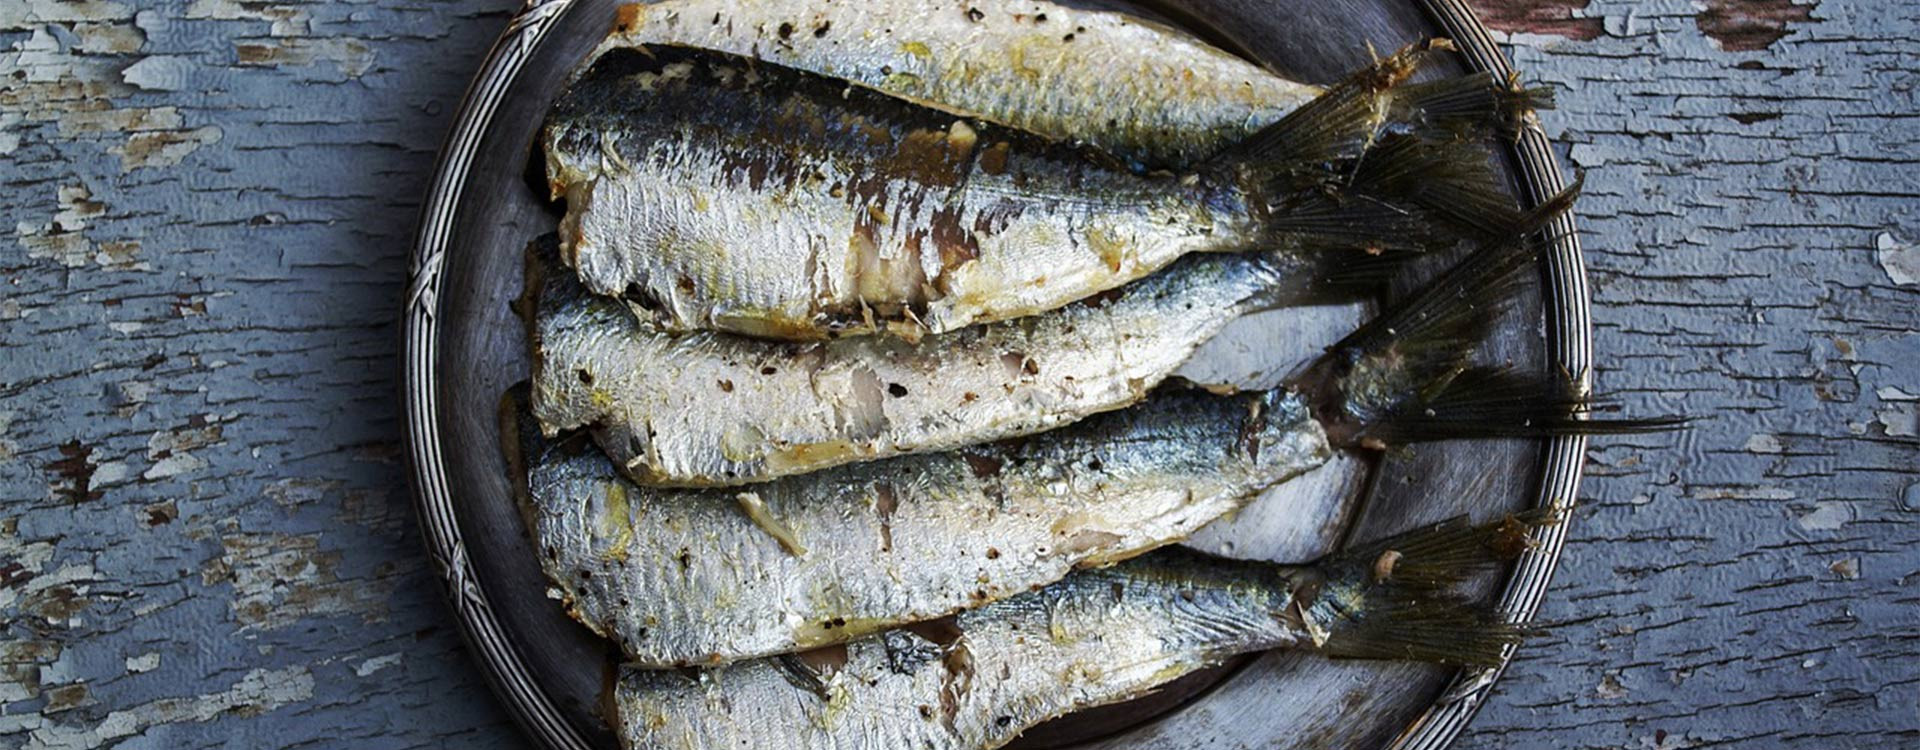 La sardine en boîte: Saveur, bienfaits et risque pour la santé